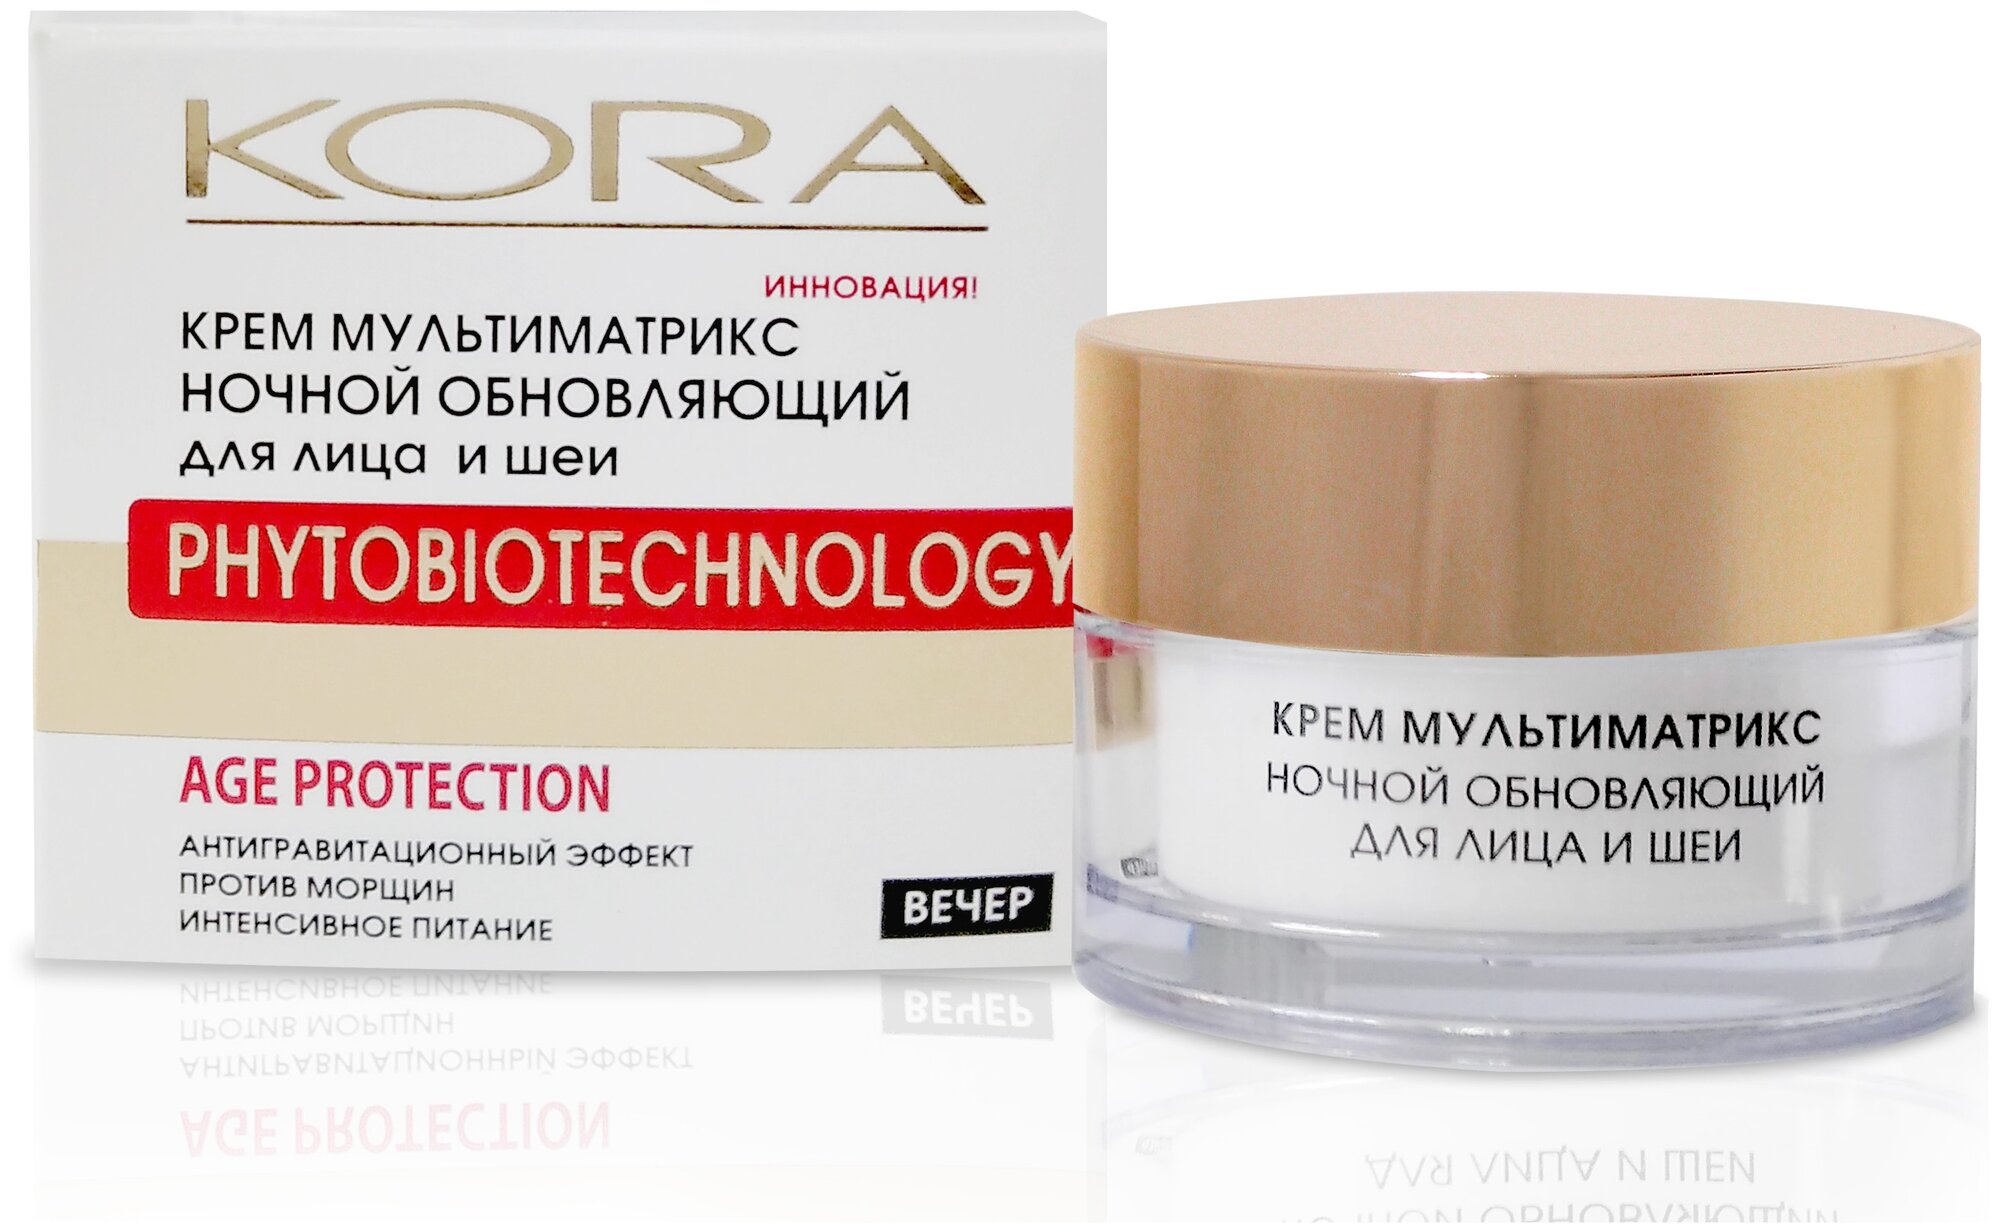 Kora Phytobiotechnology Крем Мультиматрикс ночной обновляющий для лица и шеи